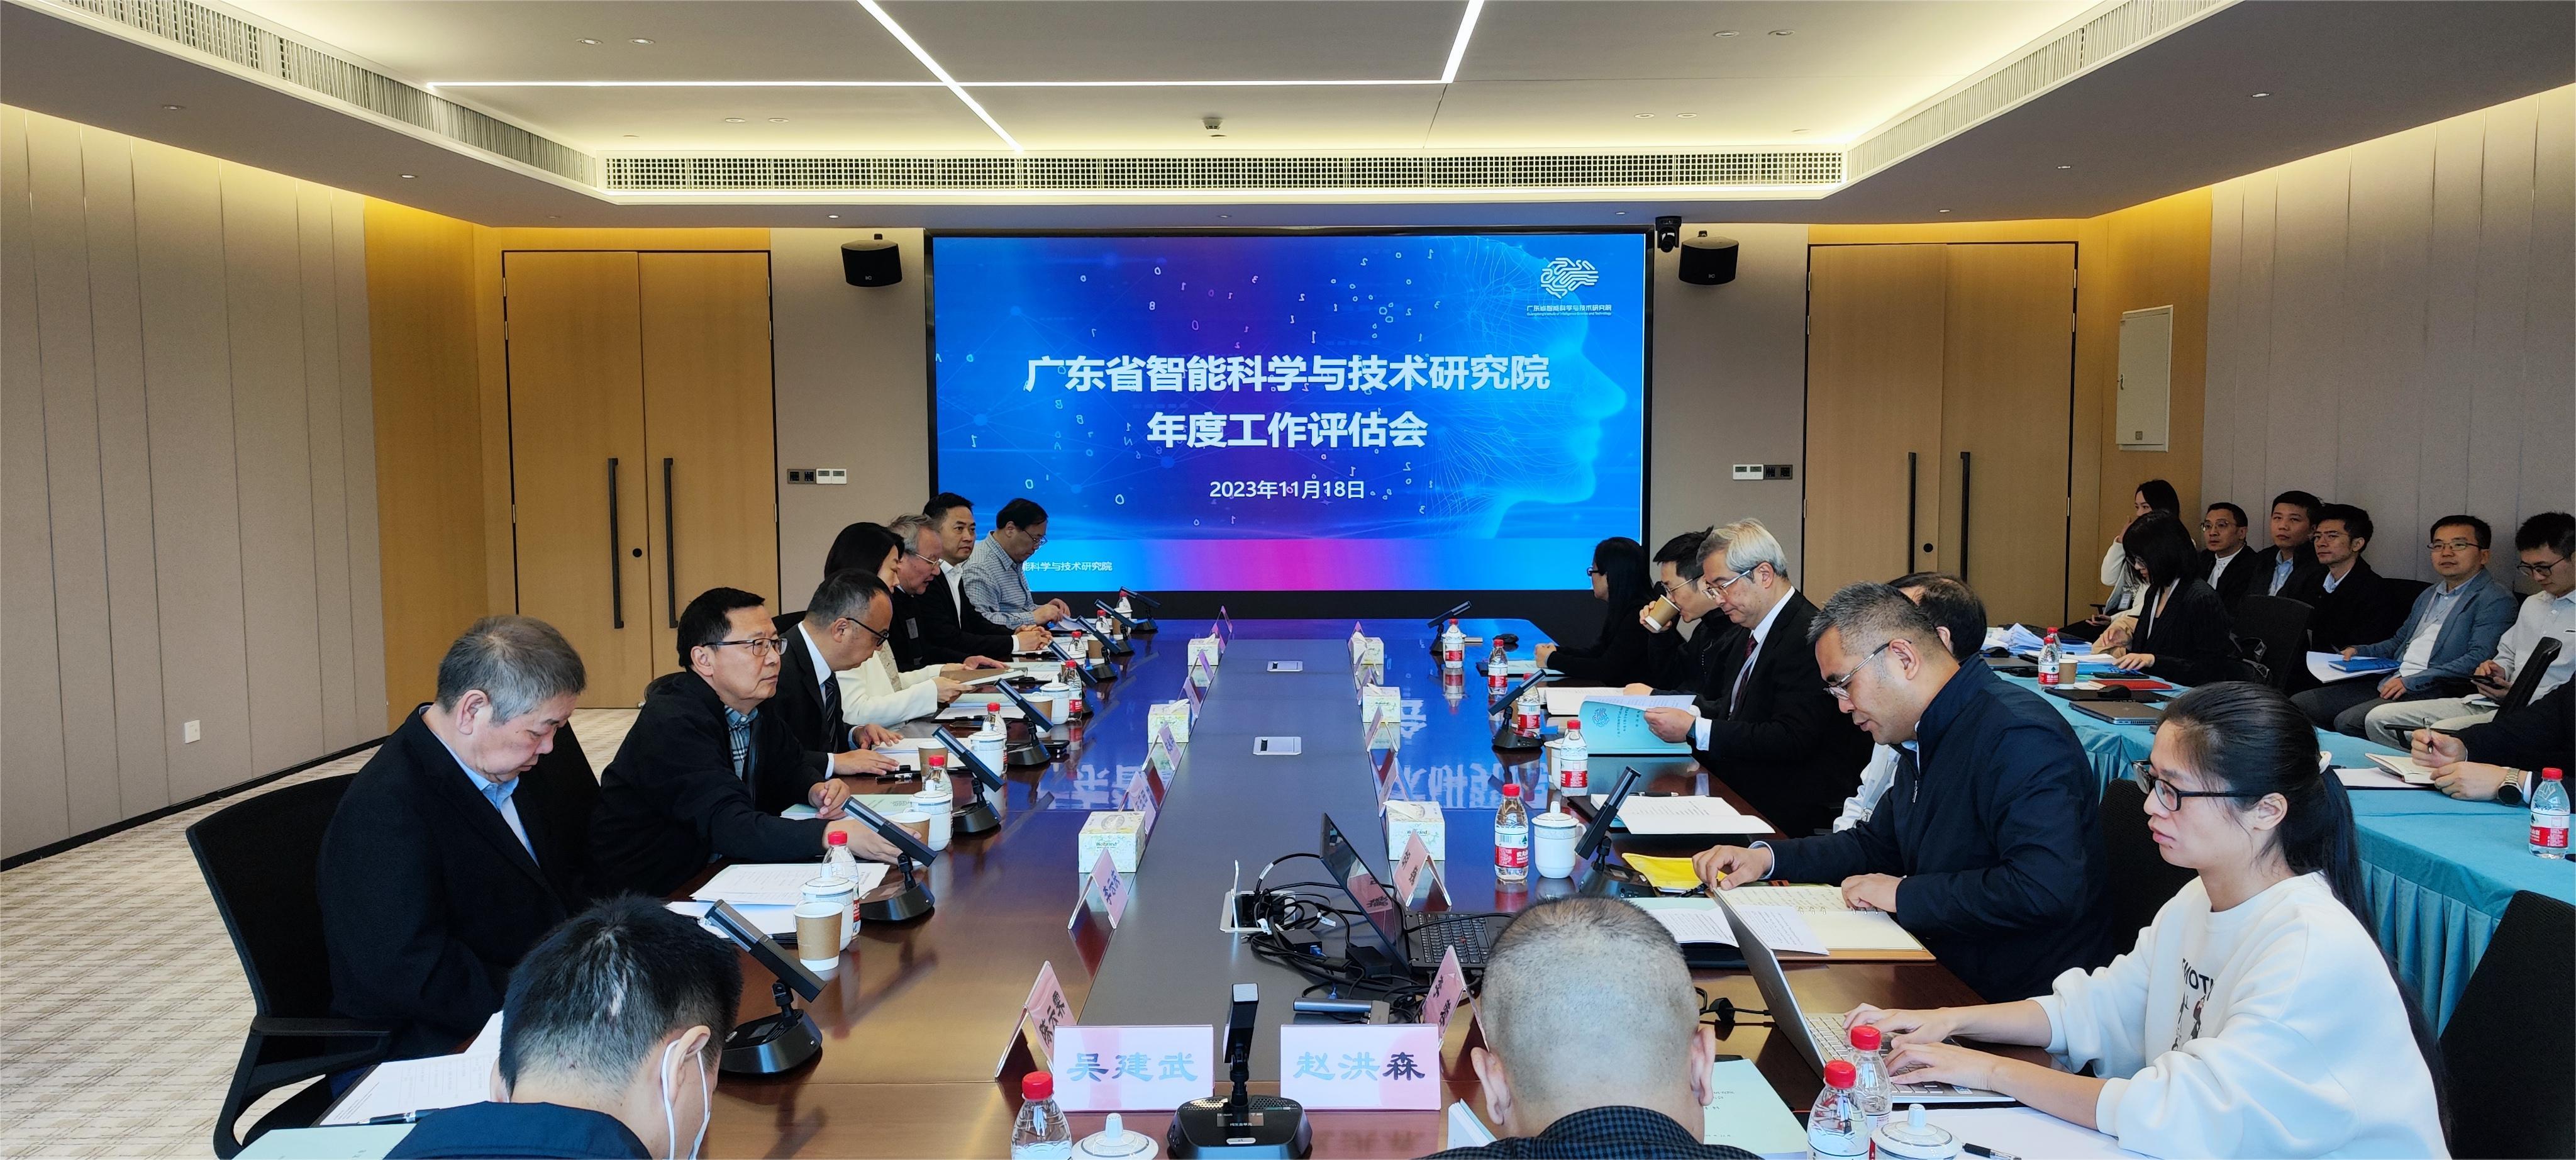 广东省智能科学与技术研究院第二年度工作评估会及学术委员会会议召开